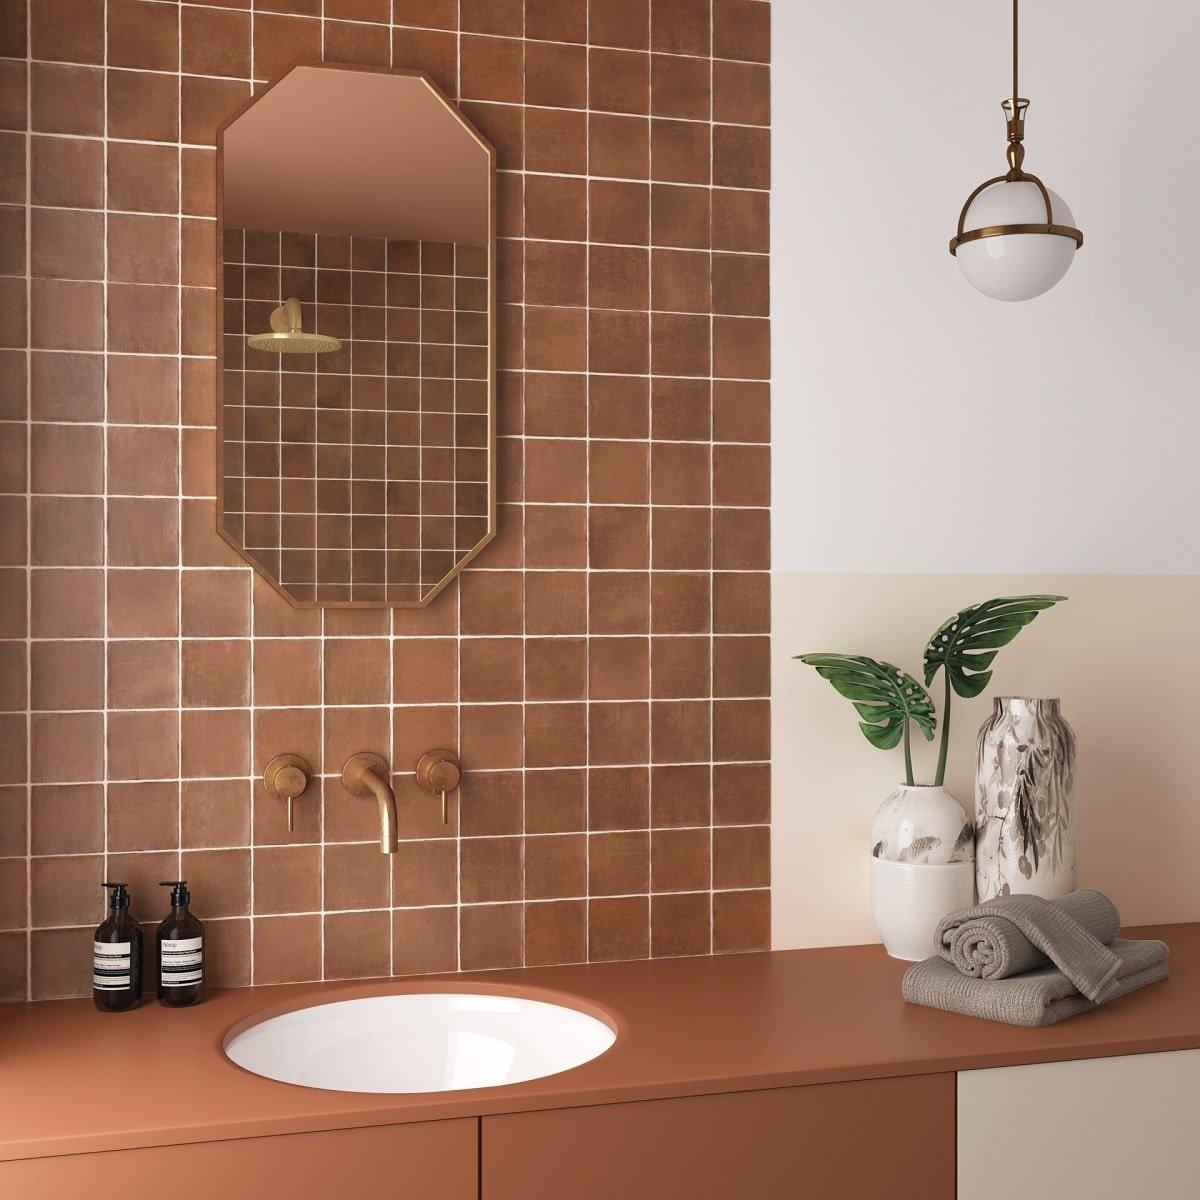 Zellige rouge brillant 10x10 cm sur le mur de la salle de bain tons neutres avec vasque, miroir et luminaire suspendu